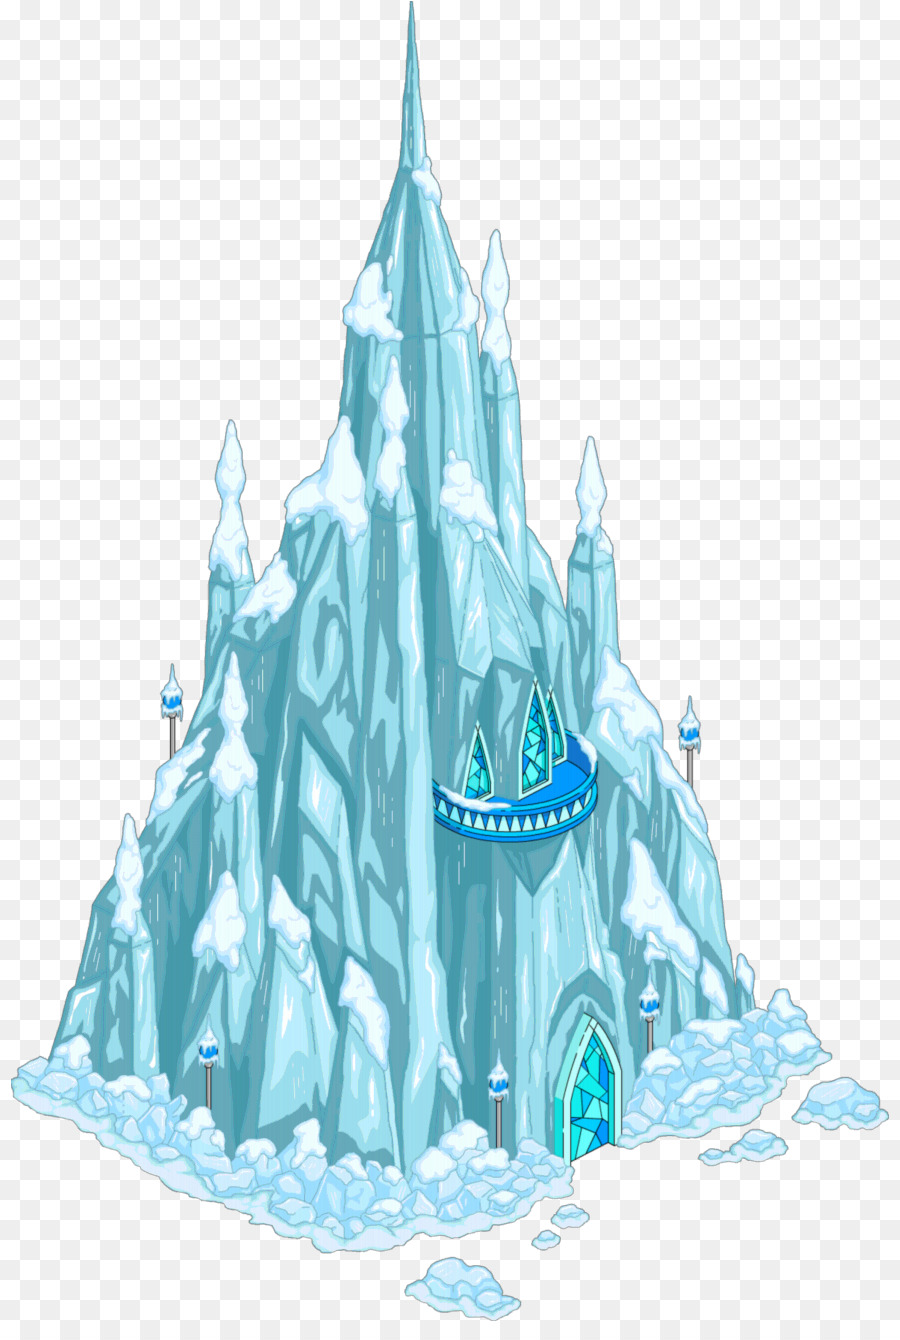 Frozen clipart ice castle. Elsa water transparent clip